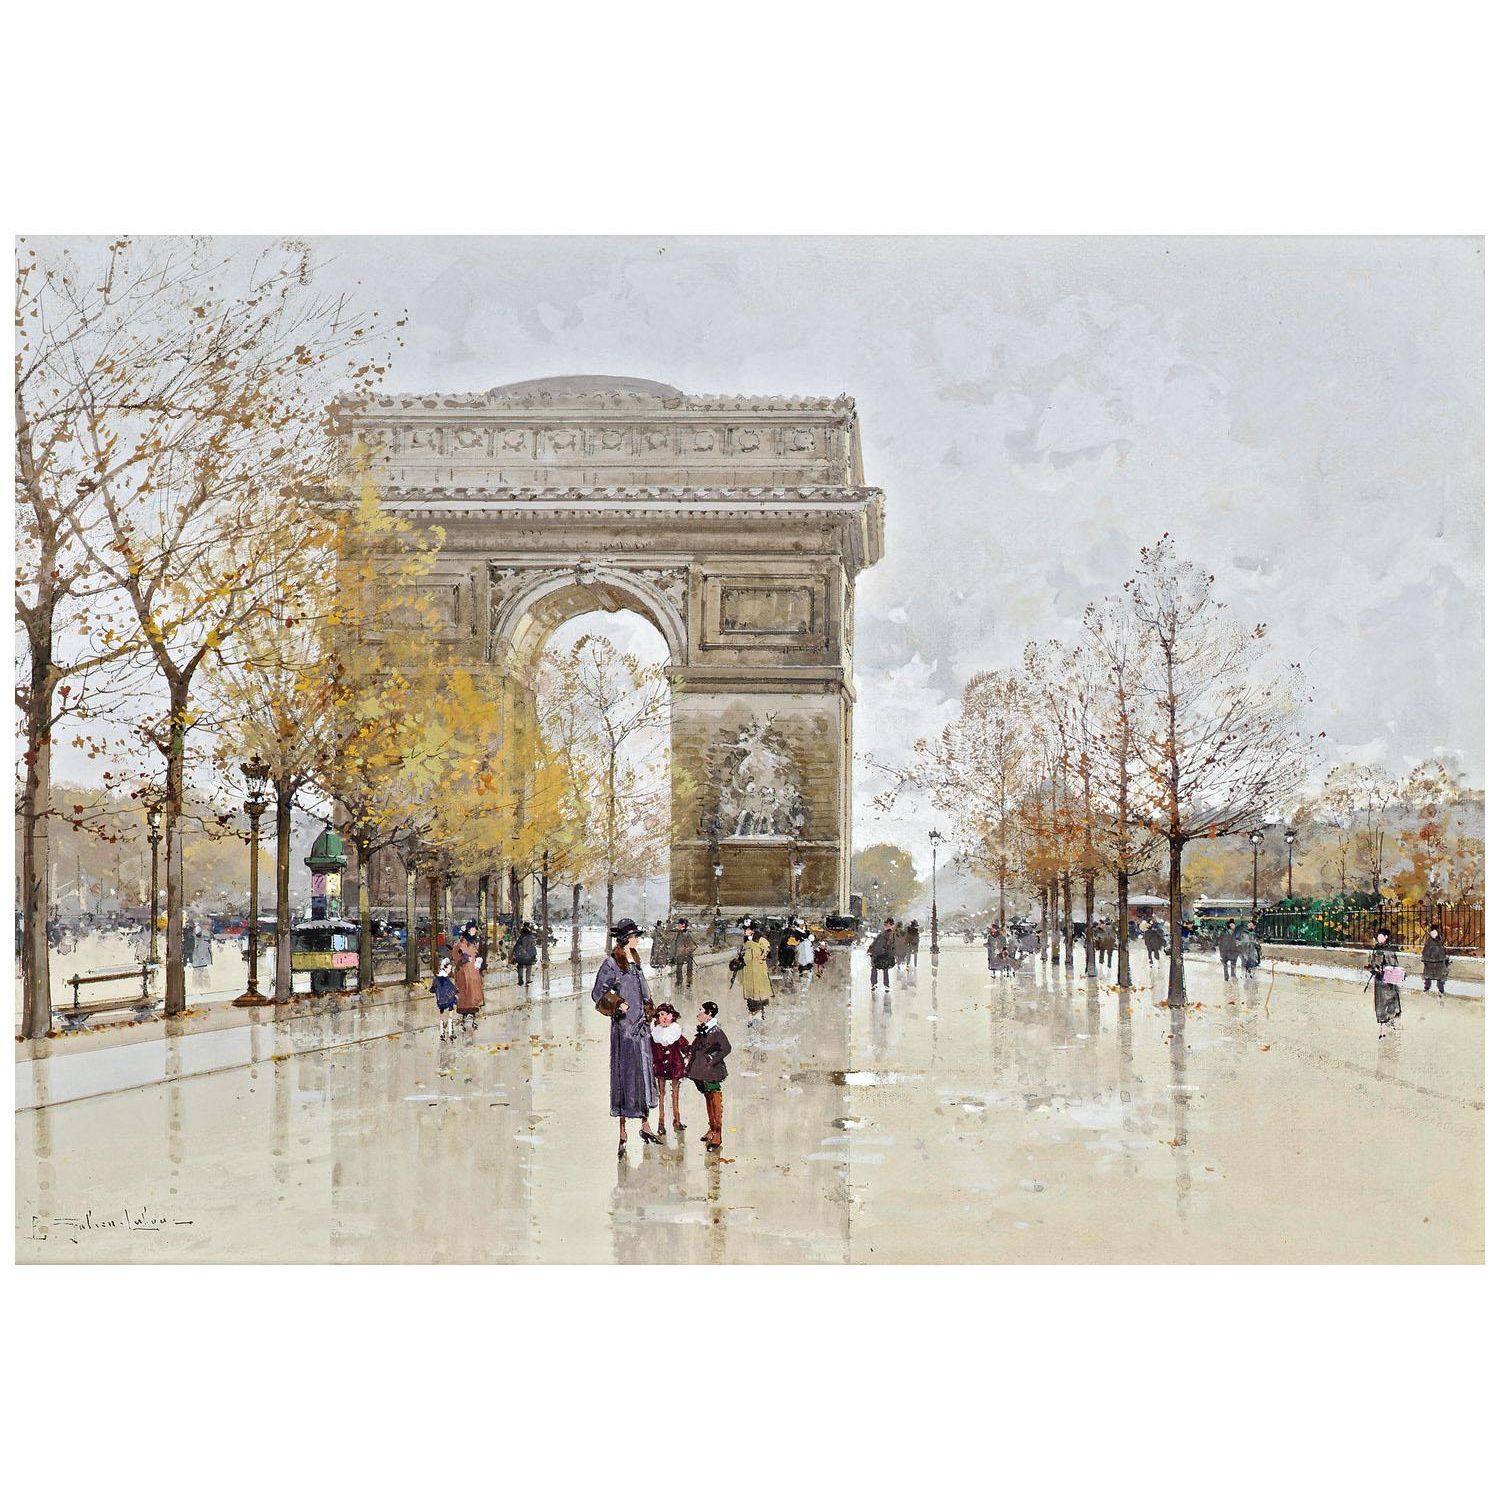 Eugène Galien-Laloue. L'Arc de Triomphe, Paris. 1900-1905